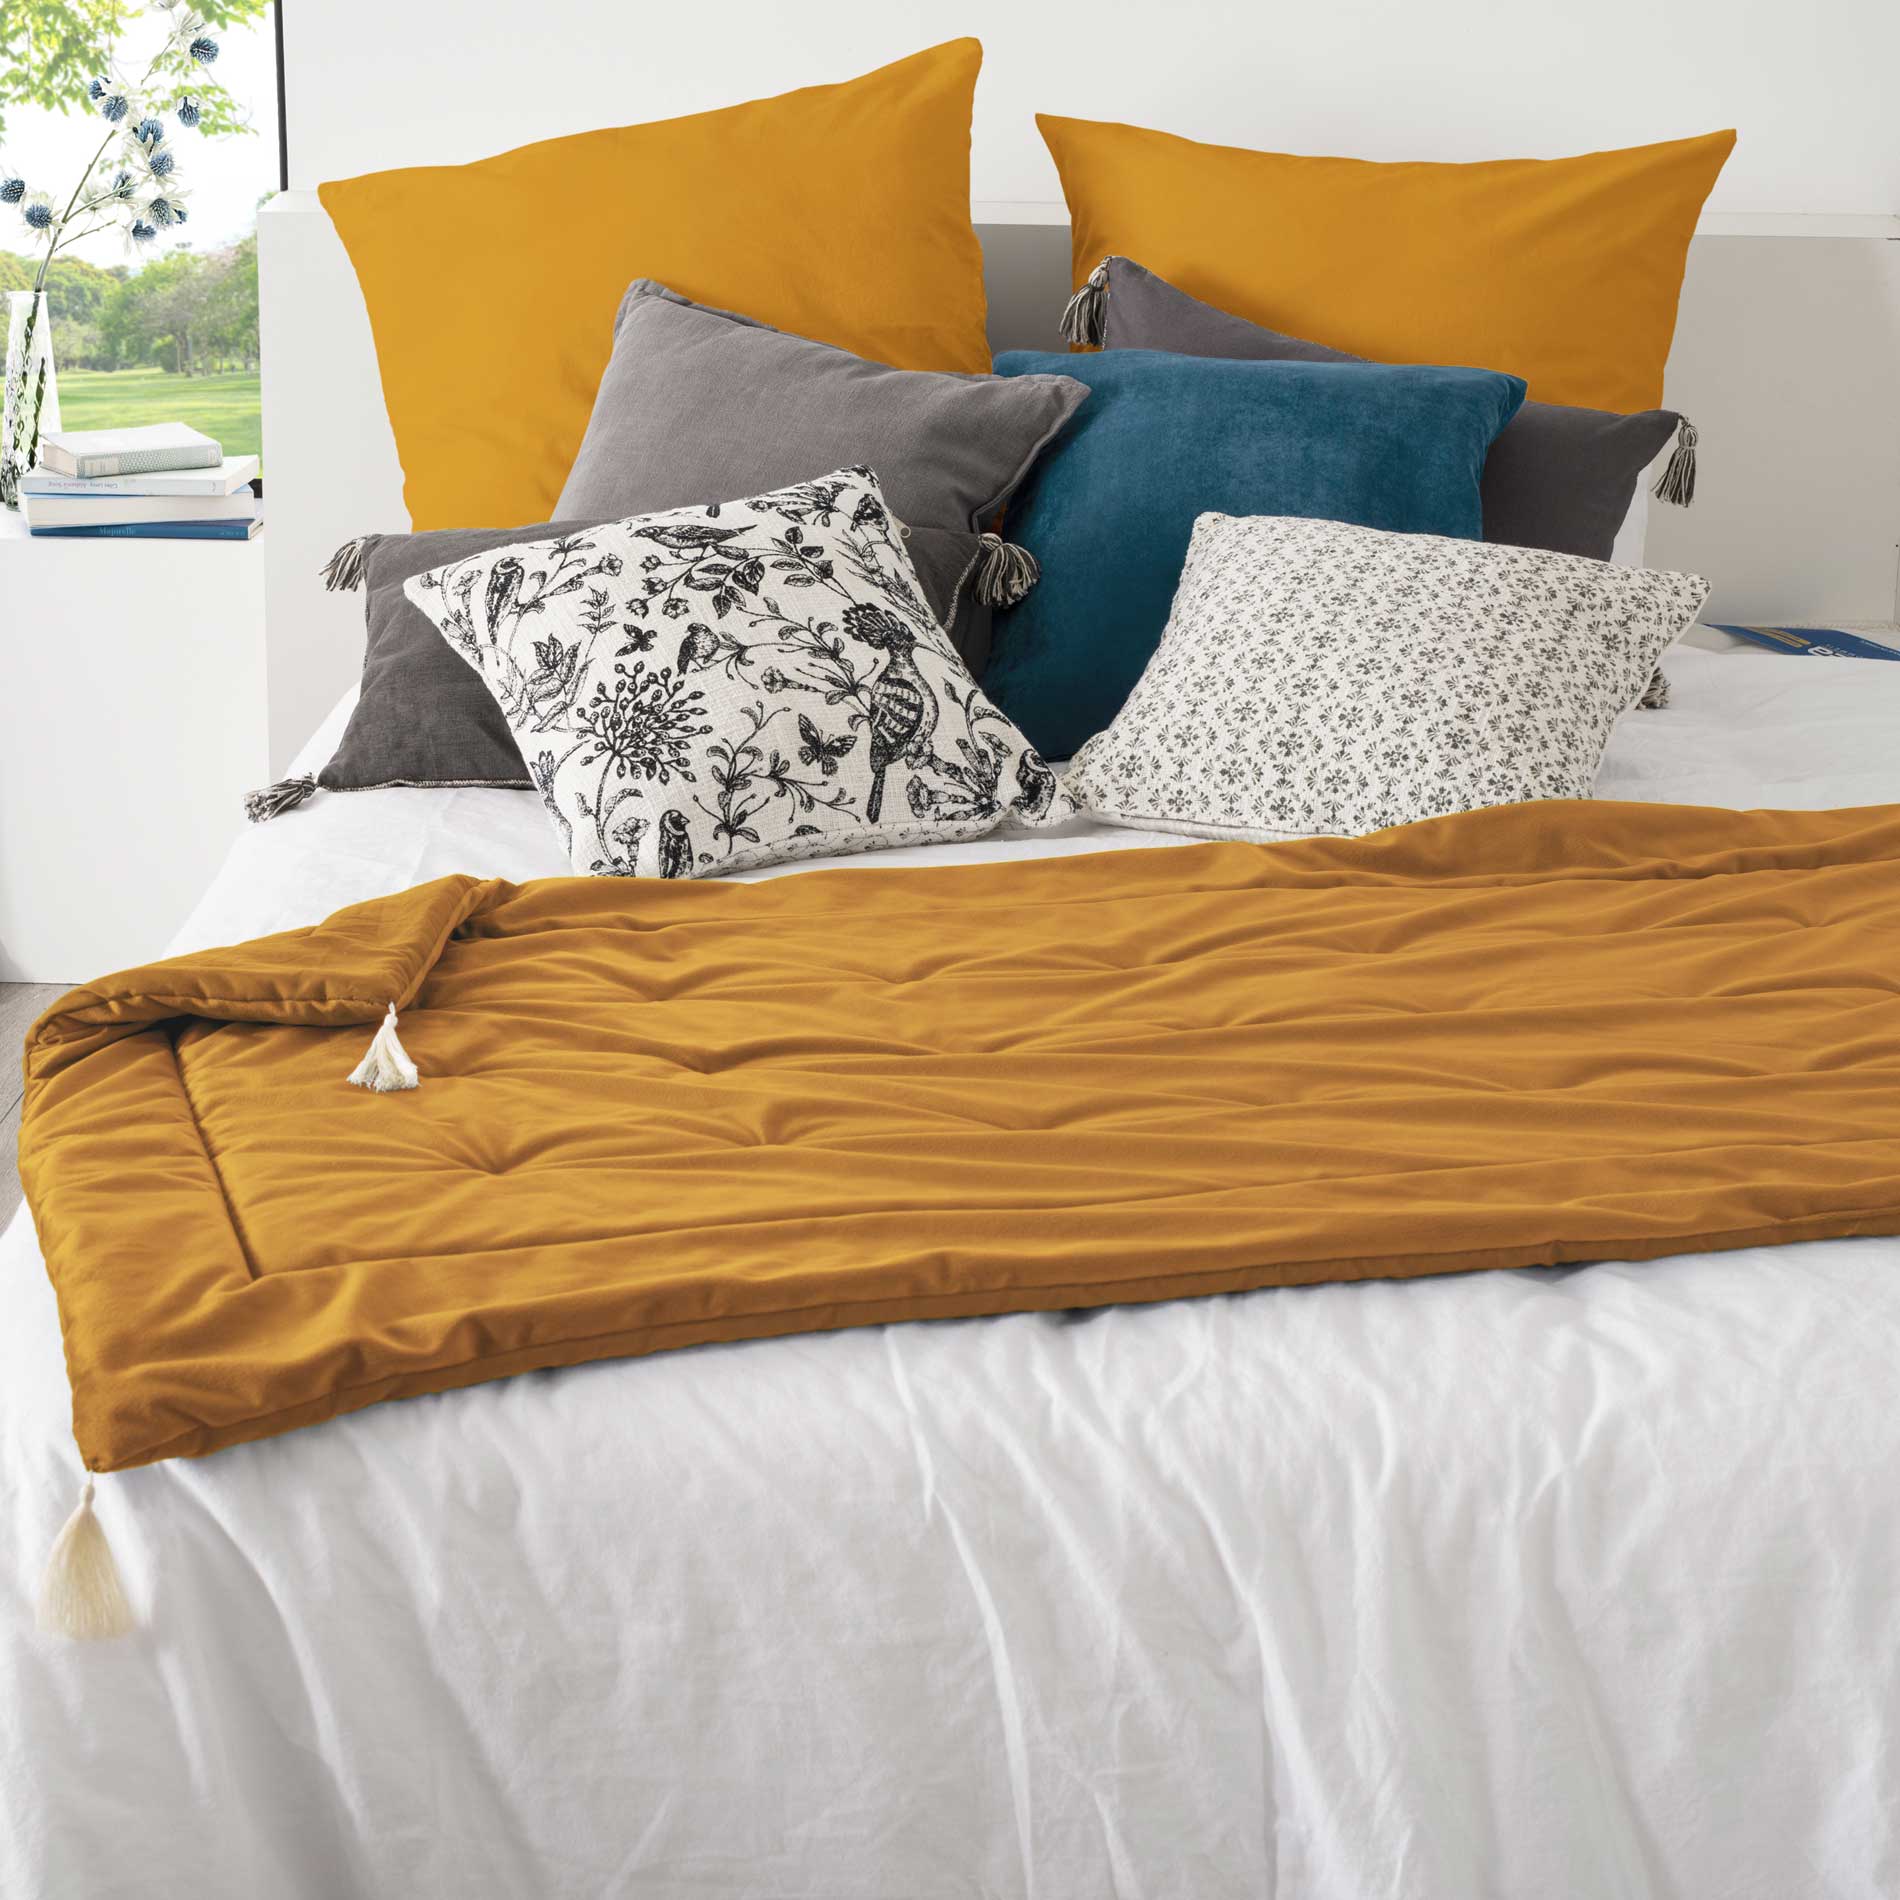 Colcha de terciopelo para cama, color gris amarillo, tamaño 150x200 cm,  200x220 cm, 230x250 cm